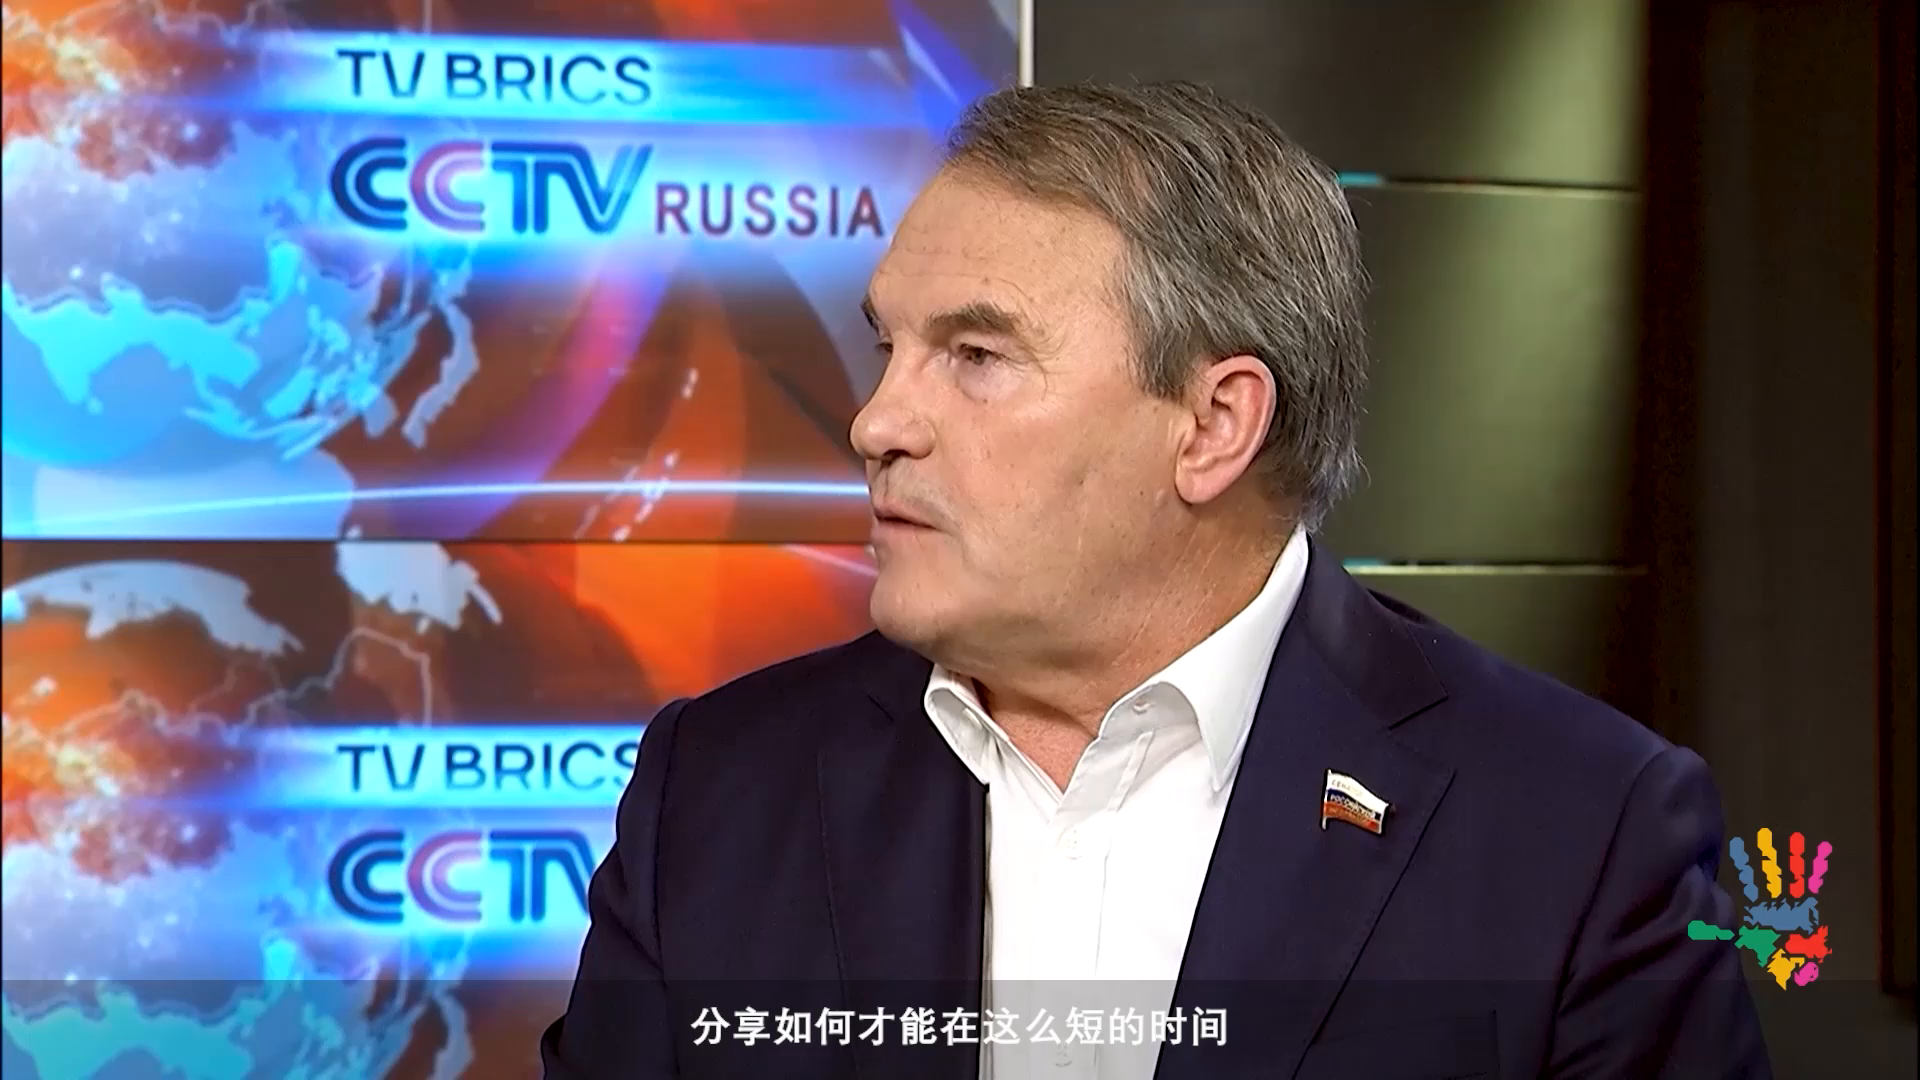 Watch TV BRICS Chinese